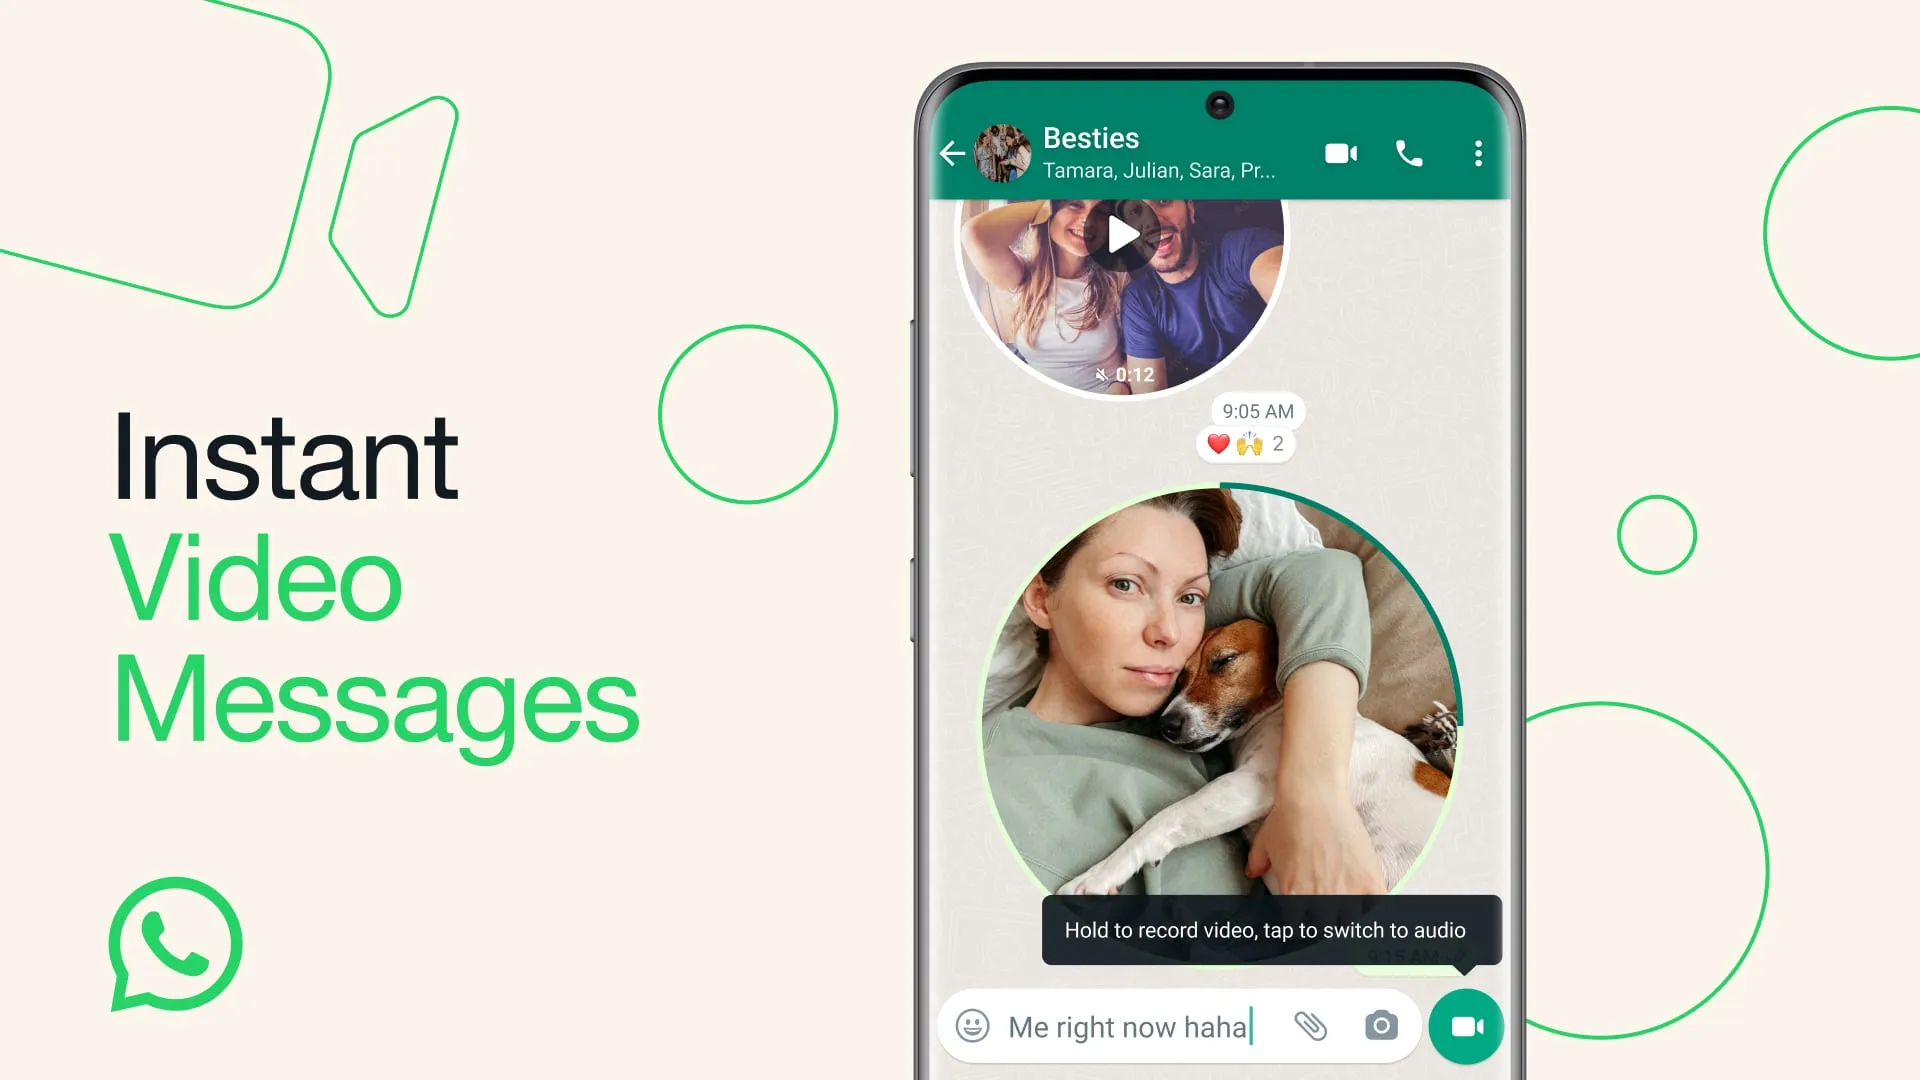 營銷圖片展示了 WhatsApp 上的即時視頻消息功能